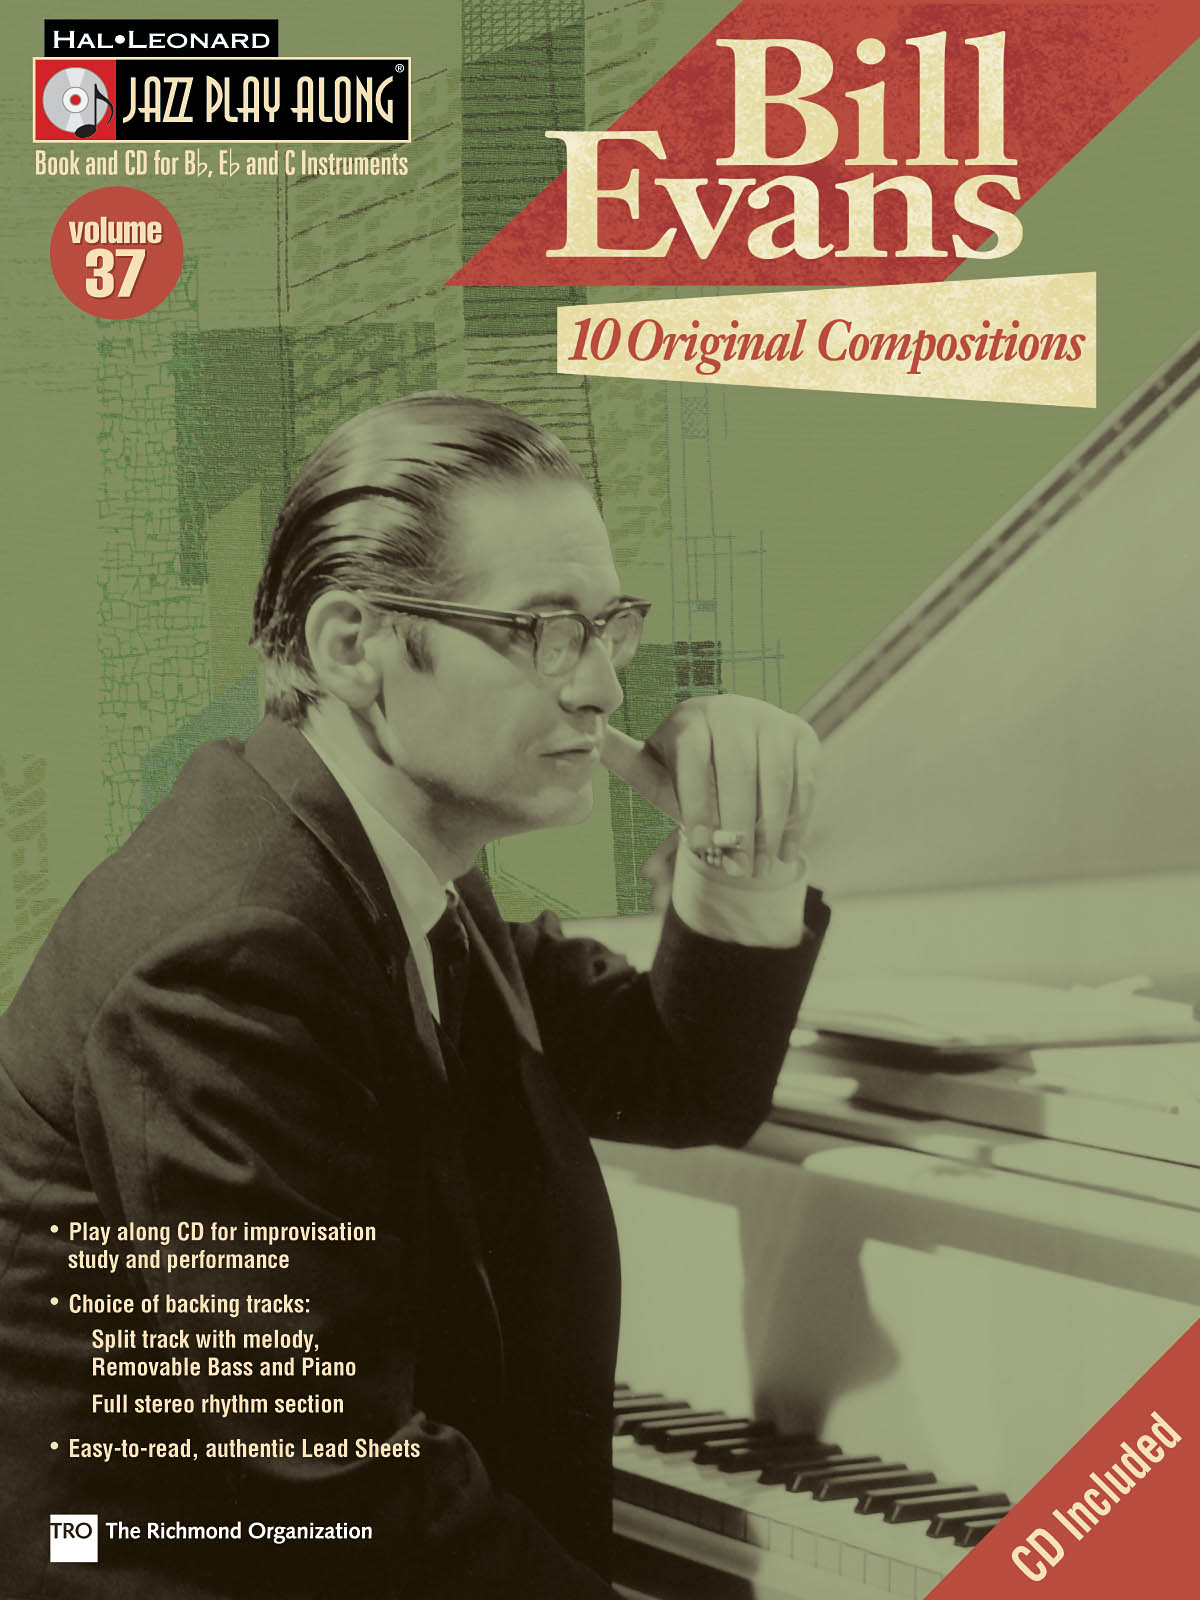 Bill Evans - 10 Original Compositions - Jazz Play-Along Volume 37 - noty pro nástroje v ladění C